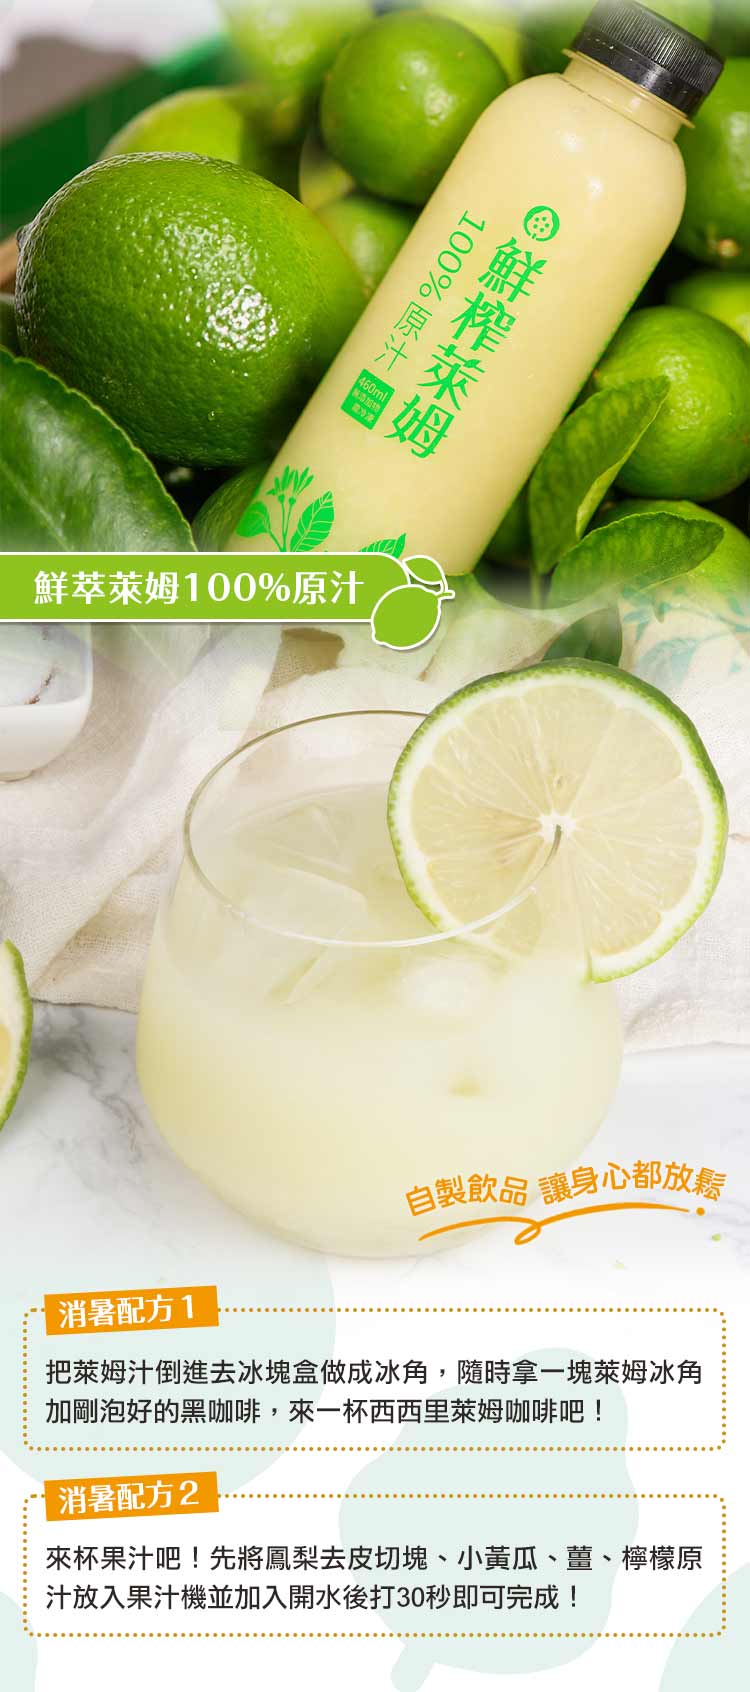       【軒禾】產銷履歷-鮮萃檸檬/萊姆原汁(任選5瓶)